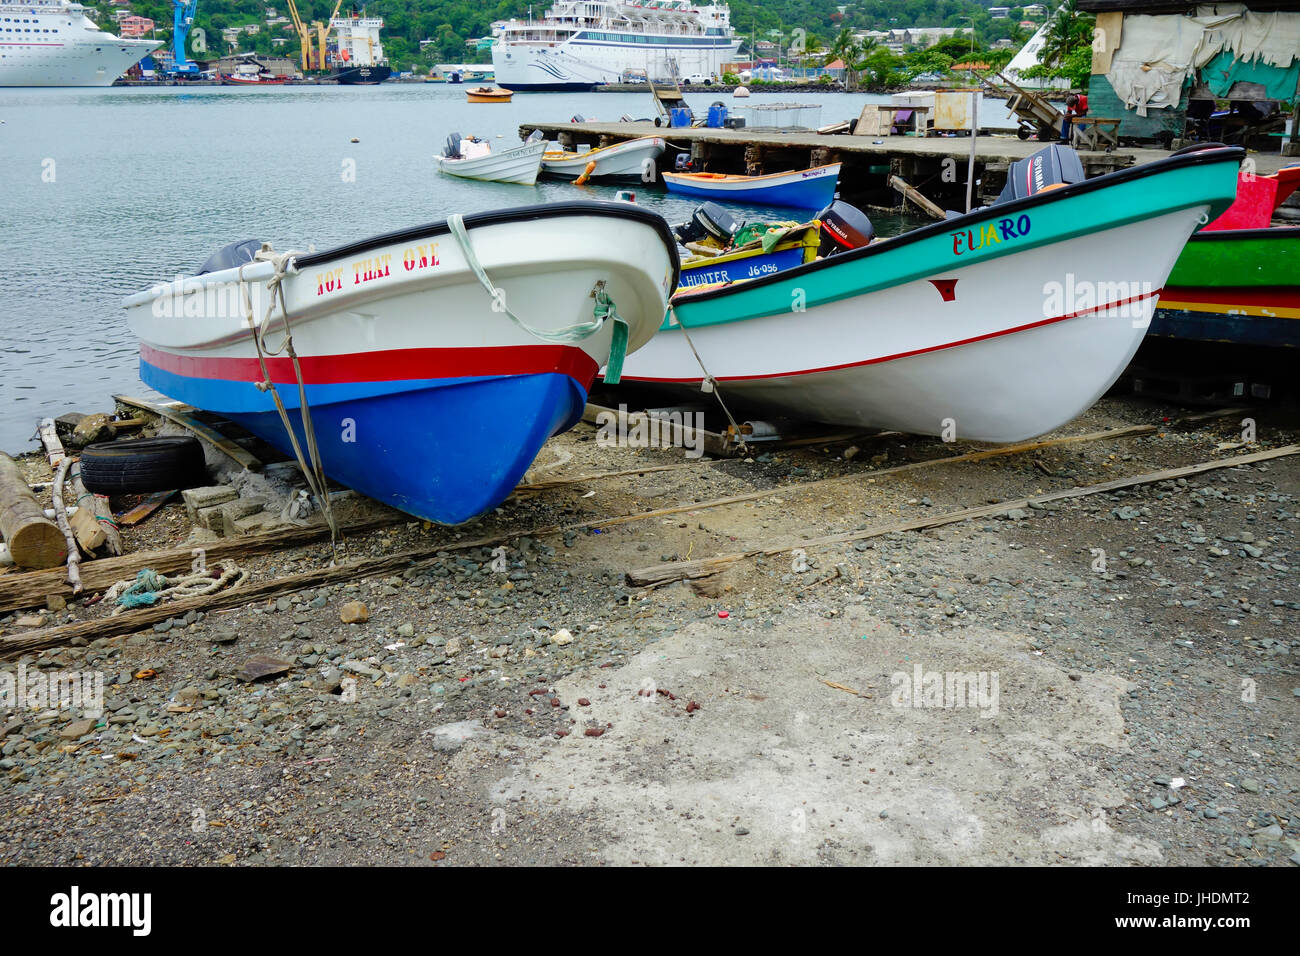 Bateaux de pêche dans le port de pêche, Castries, Sainte-Lucie, West Indies Banque D'Images